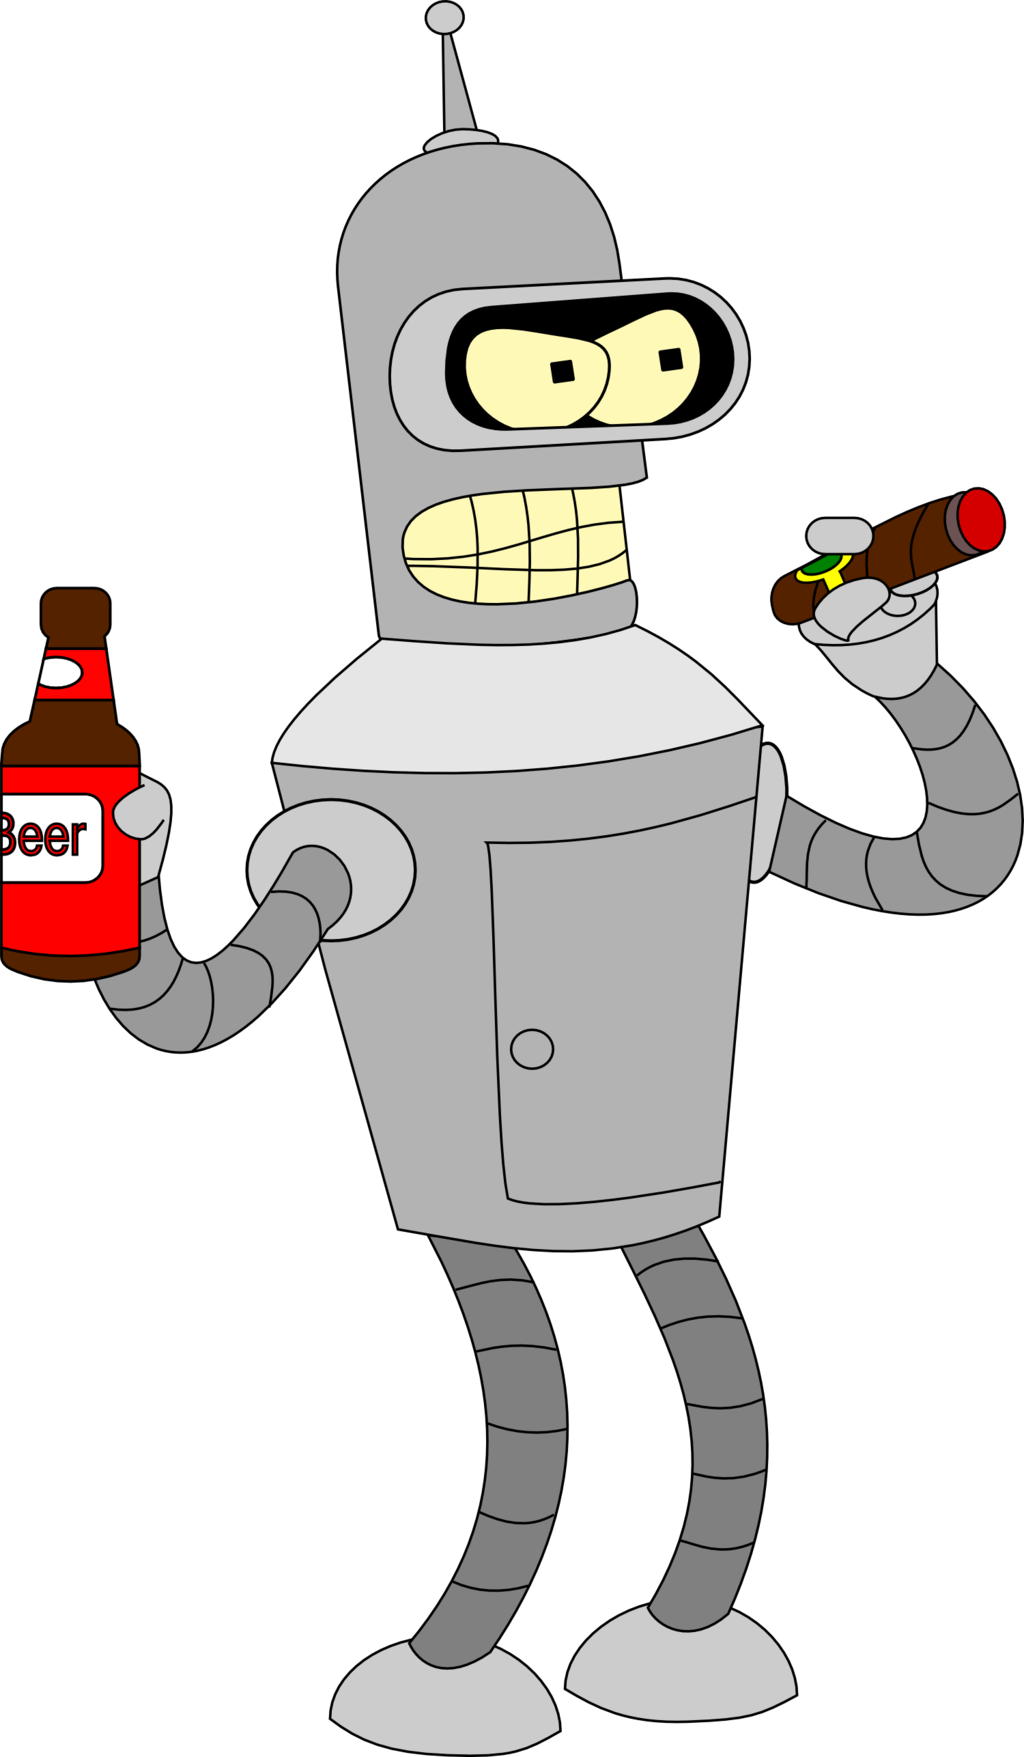 Bender PNG Image